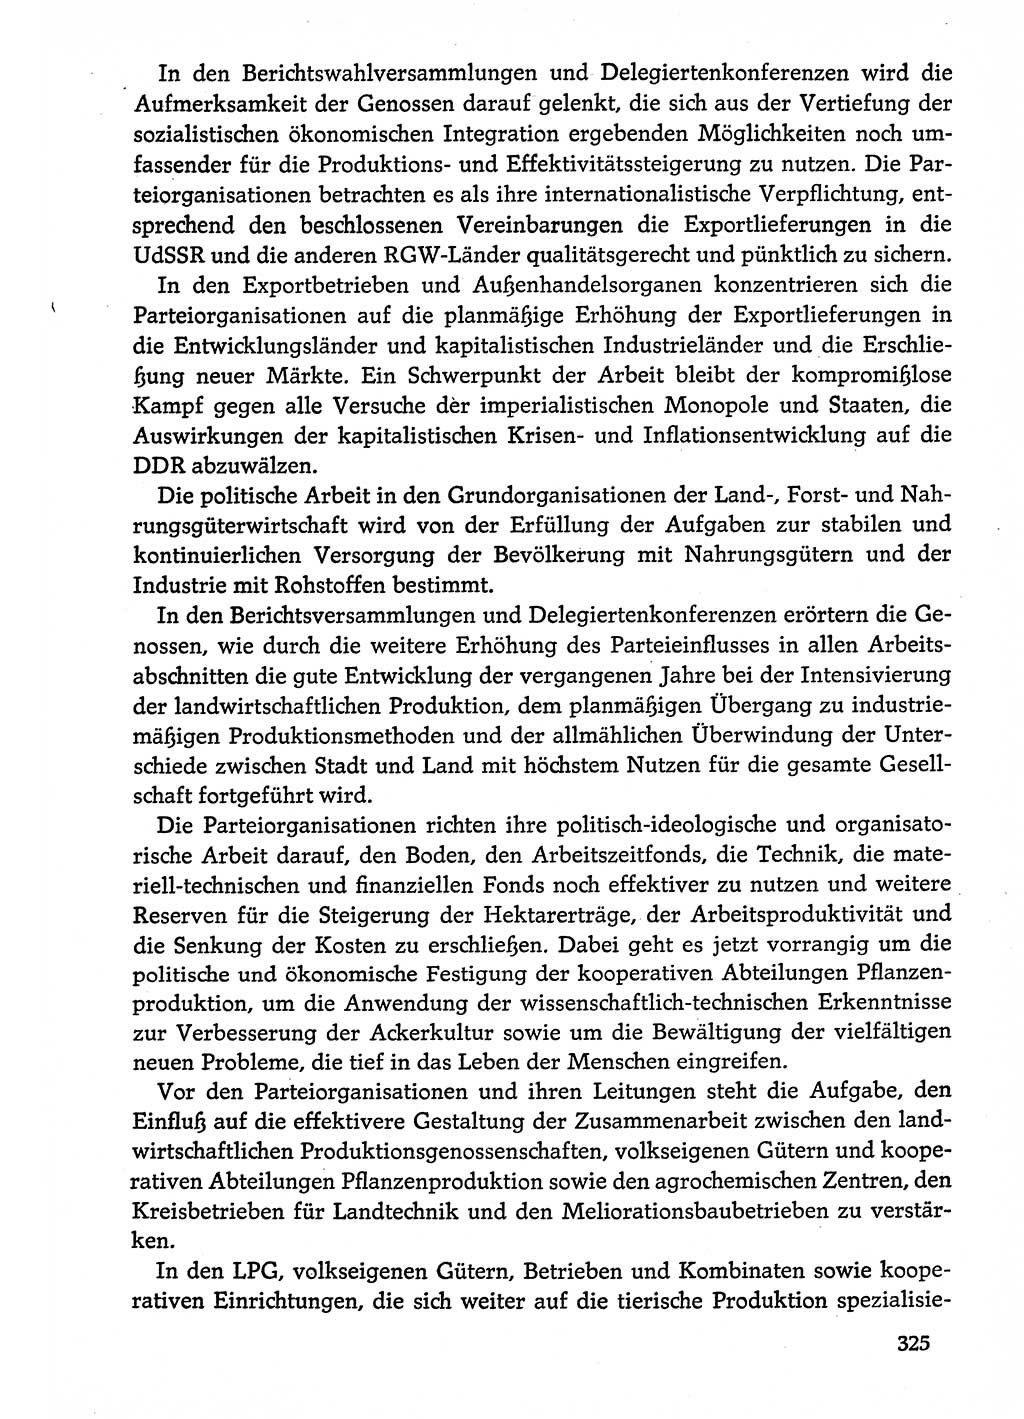 Dokumente der Sozialistischen Einheitspartei Deutschlands (SED) [Deutsche Demokratische Republik (DDR)] 1974-1975, Seite 325 (Dok. SED DDR 1978, Bd. ⅩⅤ, S. 325)